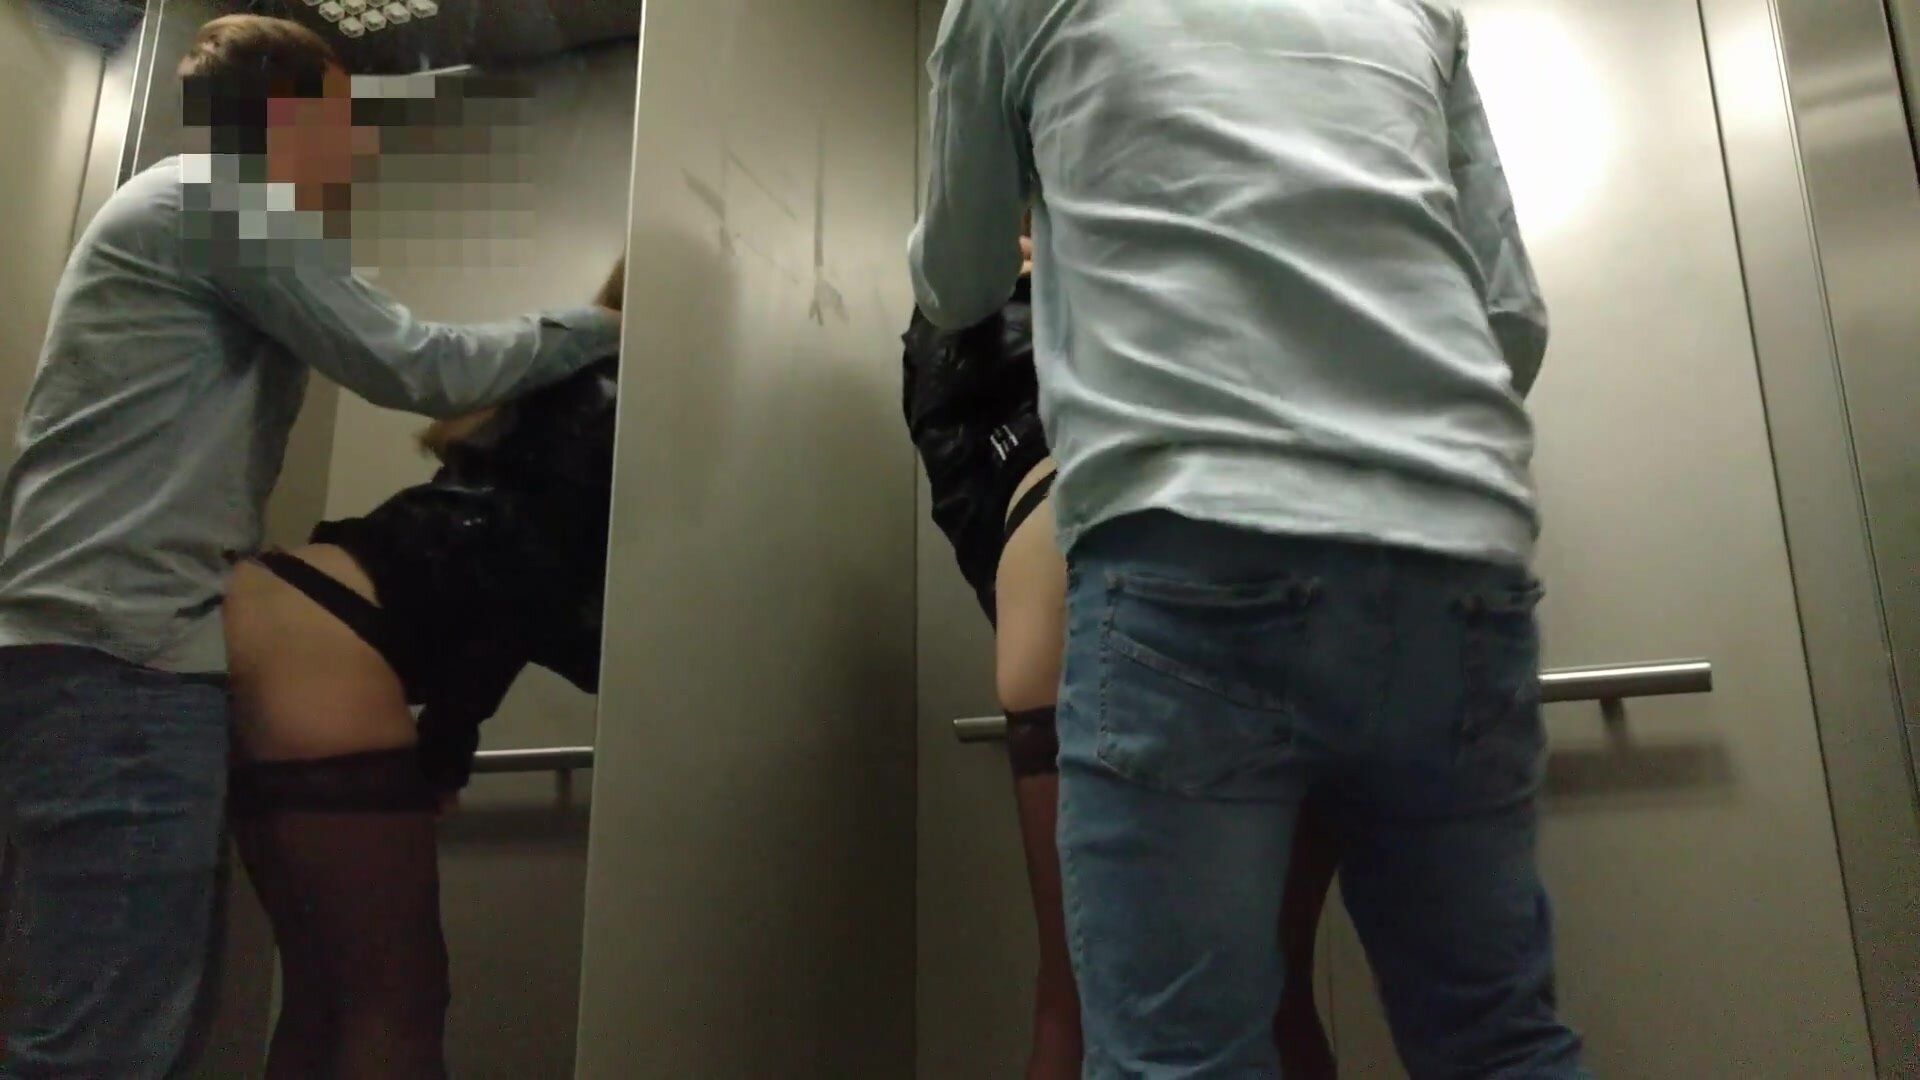 Voyeurstel doet riskante openbare seks in een lift foto